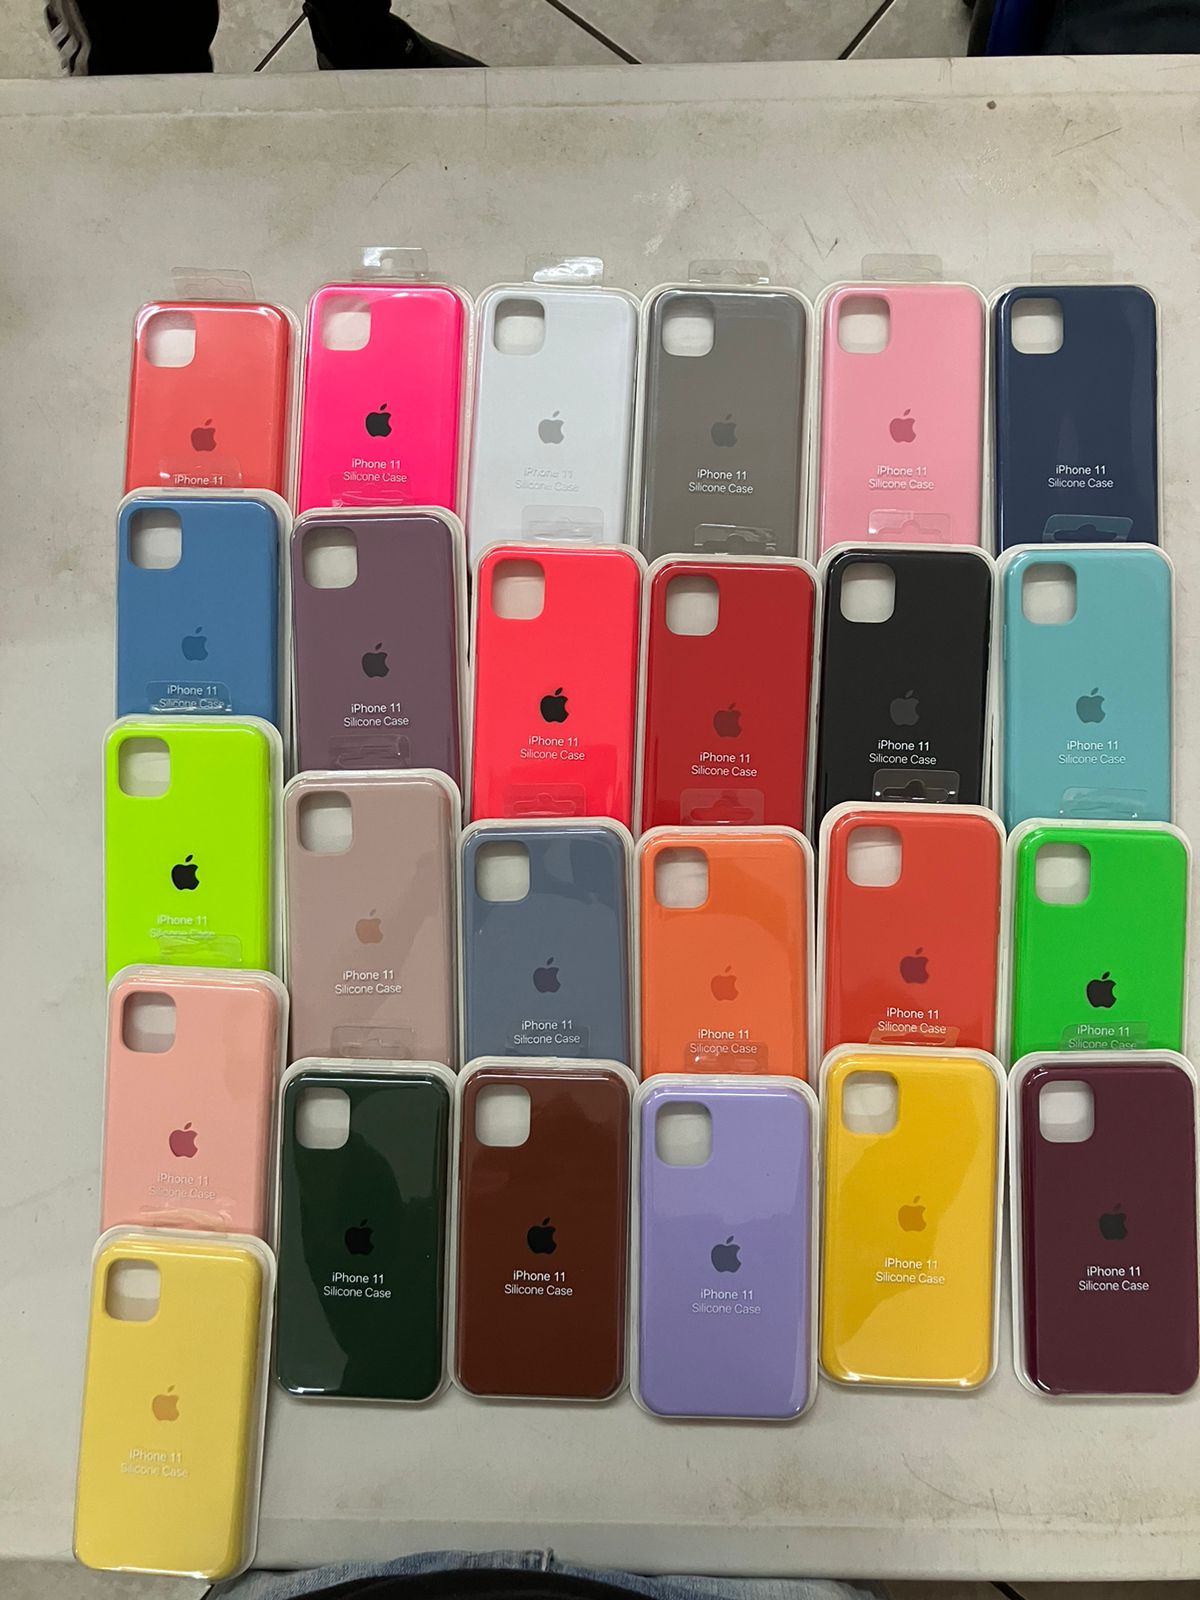 Carcasa de Silicona Iphone 11 - Rosa Claro